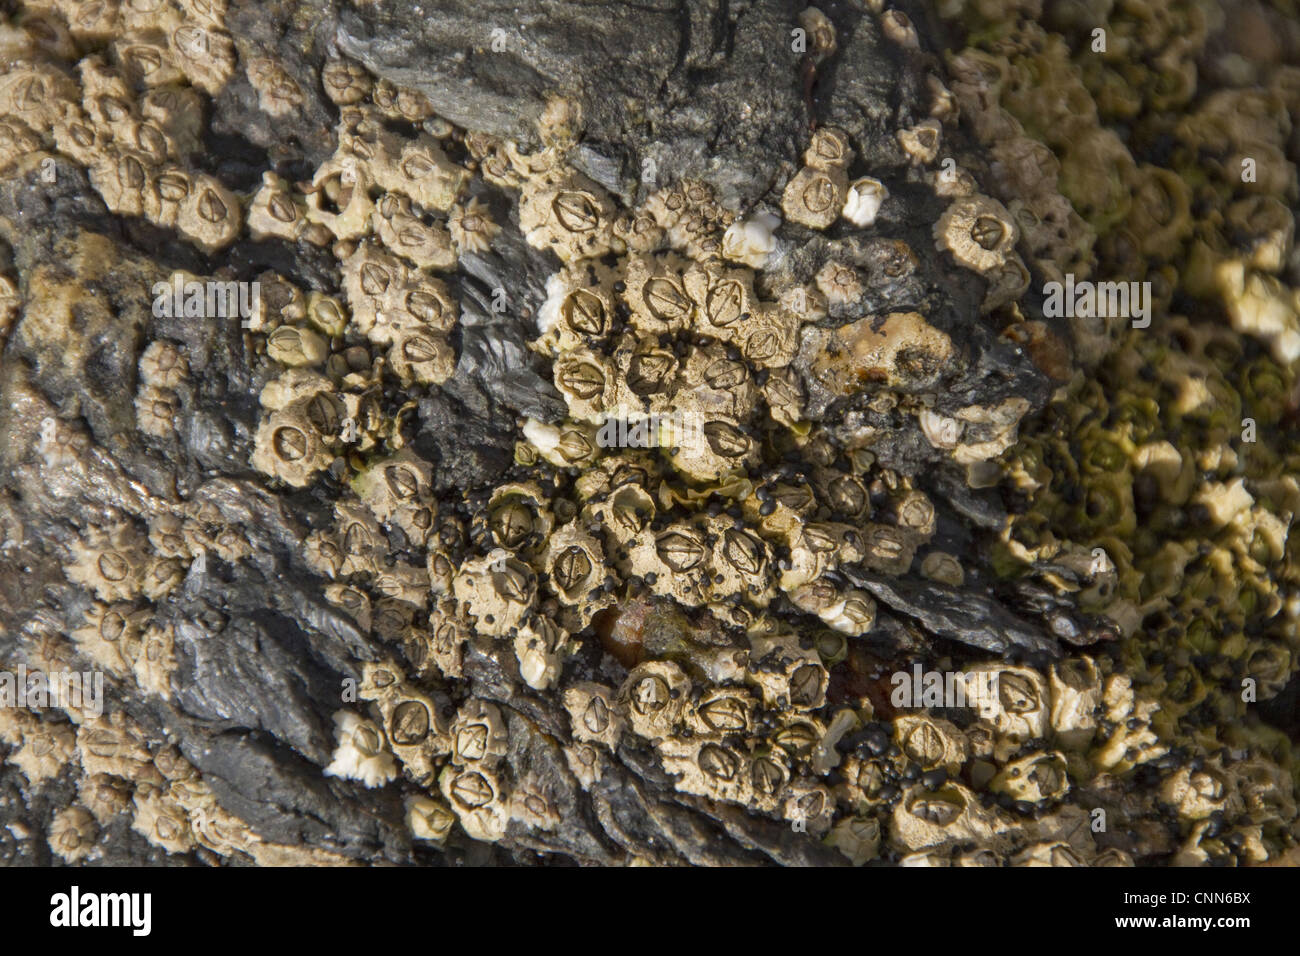 Semibalanus balanoides común boreogadus generalizada de especies árticas acorn percebe rocas comunes otros sustratos zona intermareal Foto de stock